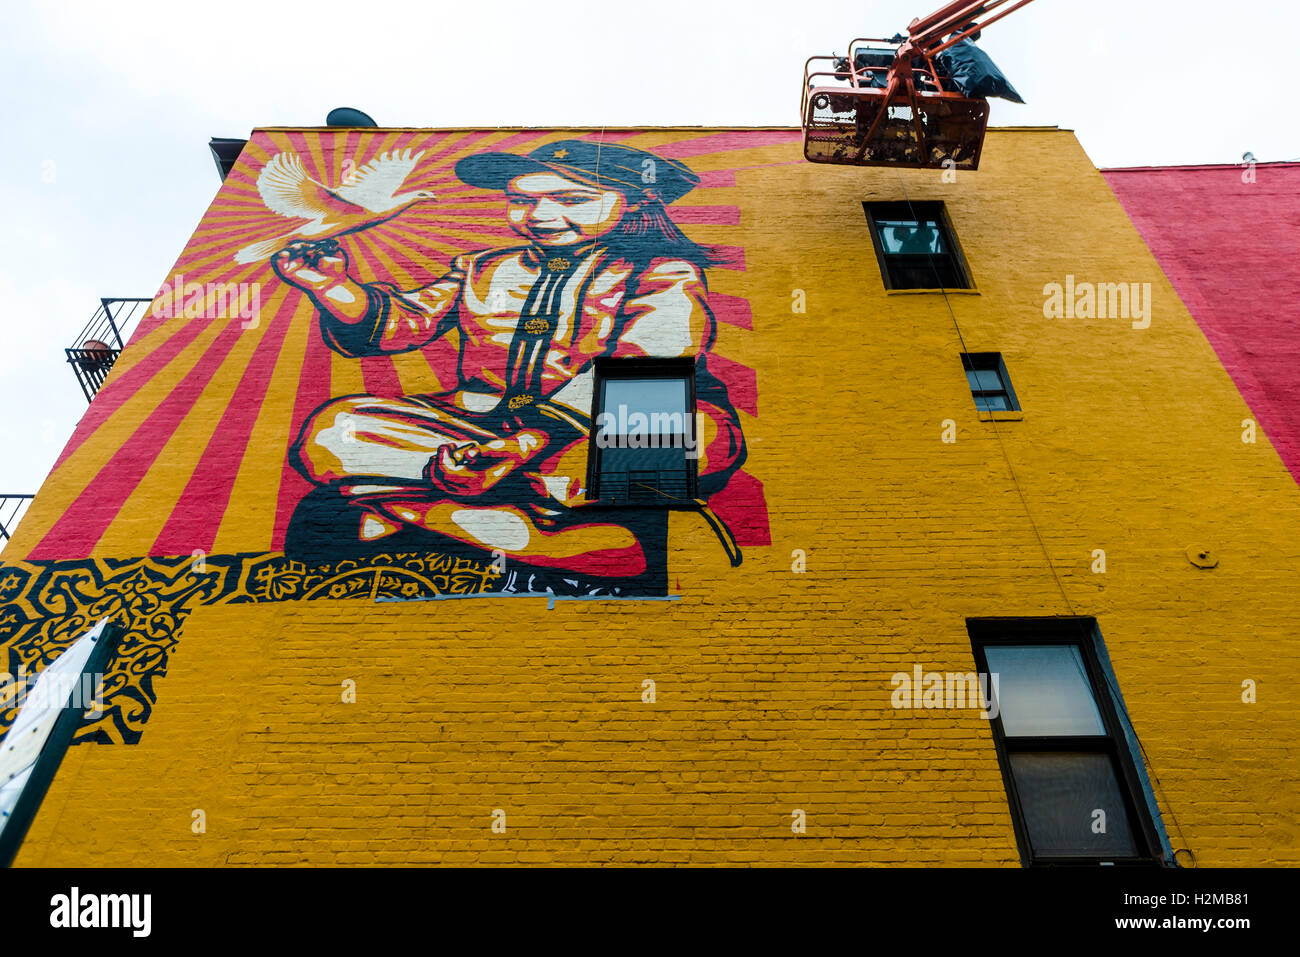 New York, NY 29 septembre 2016 Shepard Fairey fresque remonte sur le mur d'un bâtiment à New York East Village.. Intitulé viva la revolucion' les caractéristiques de la peinture la plus ancienne du Fairey fille et a été créé en 2008. ©Stacy Walsh Rosenstock Banque D'Images